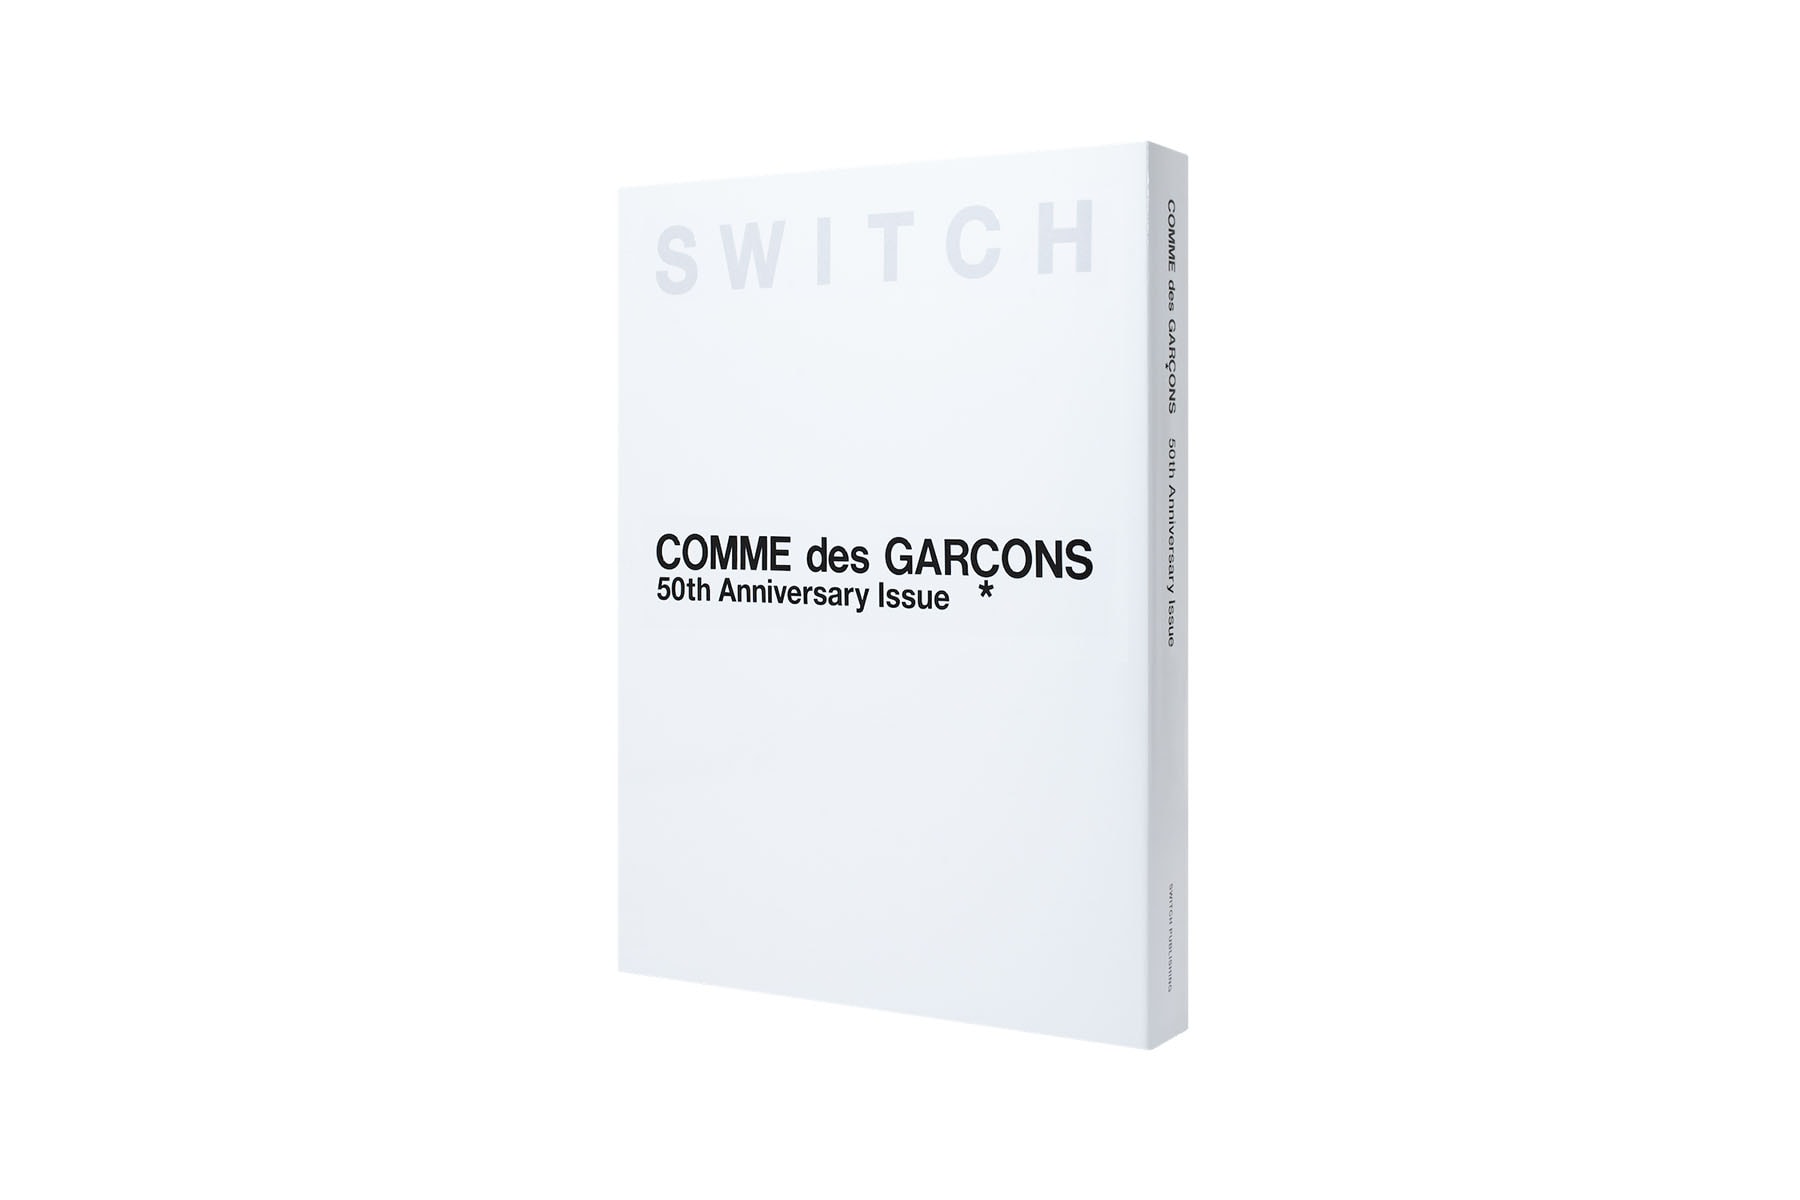 日本雜誌《SWITCH》正式推出 COMME des GARÇONS 成立 50 周年紀念特刊